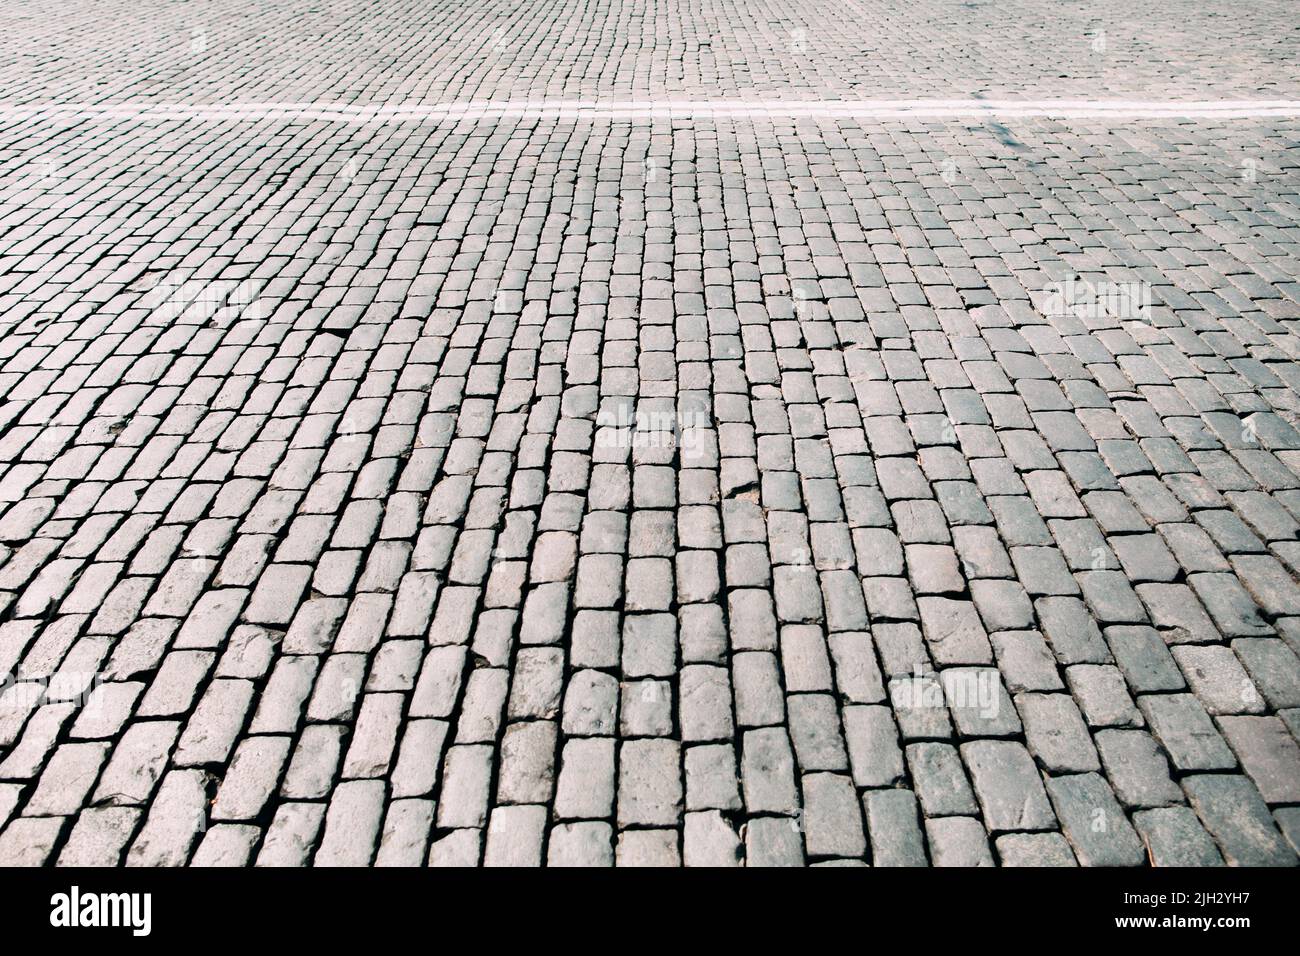 Pavimentazione in pietra, struttura quadrata, spazio libero Foto Stock